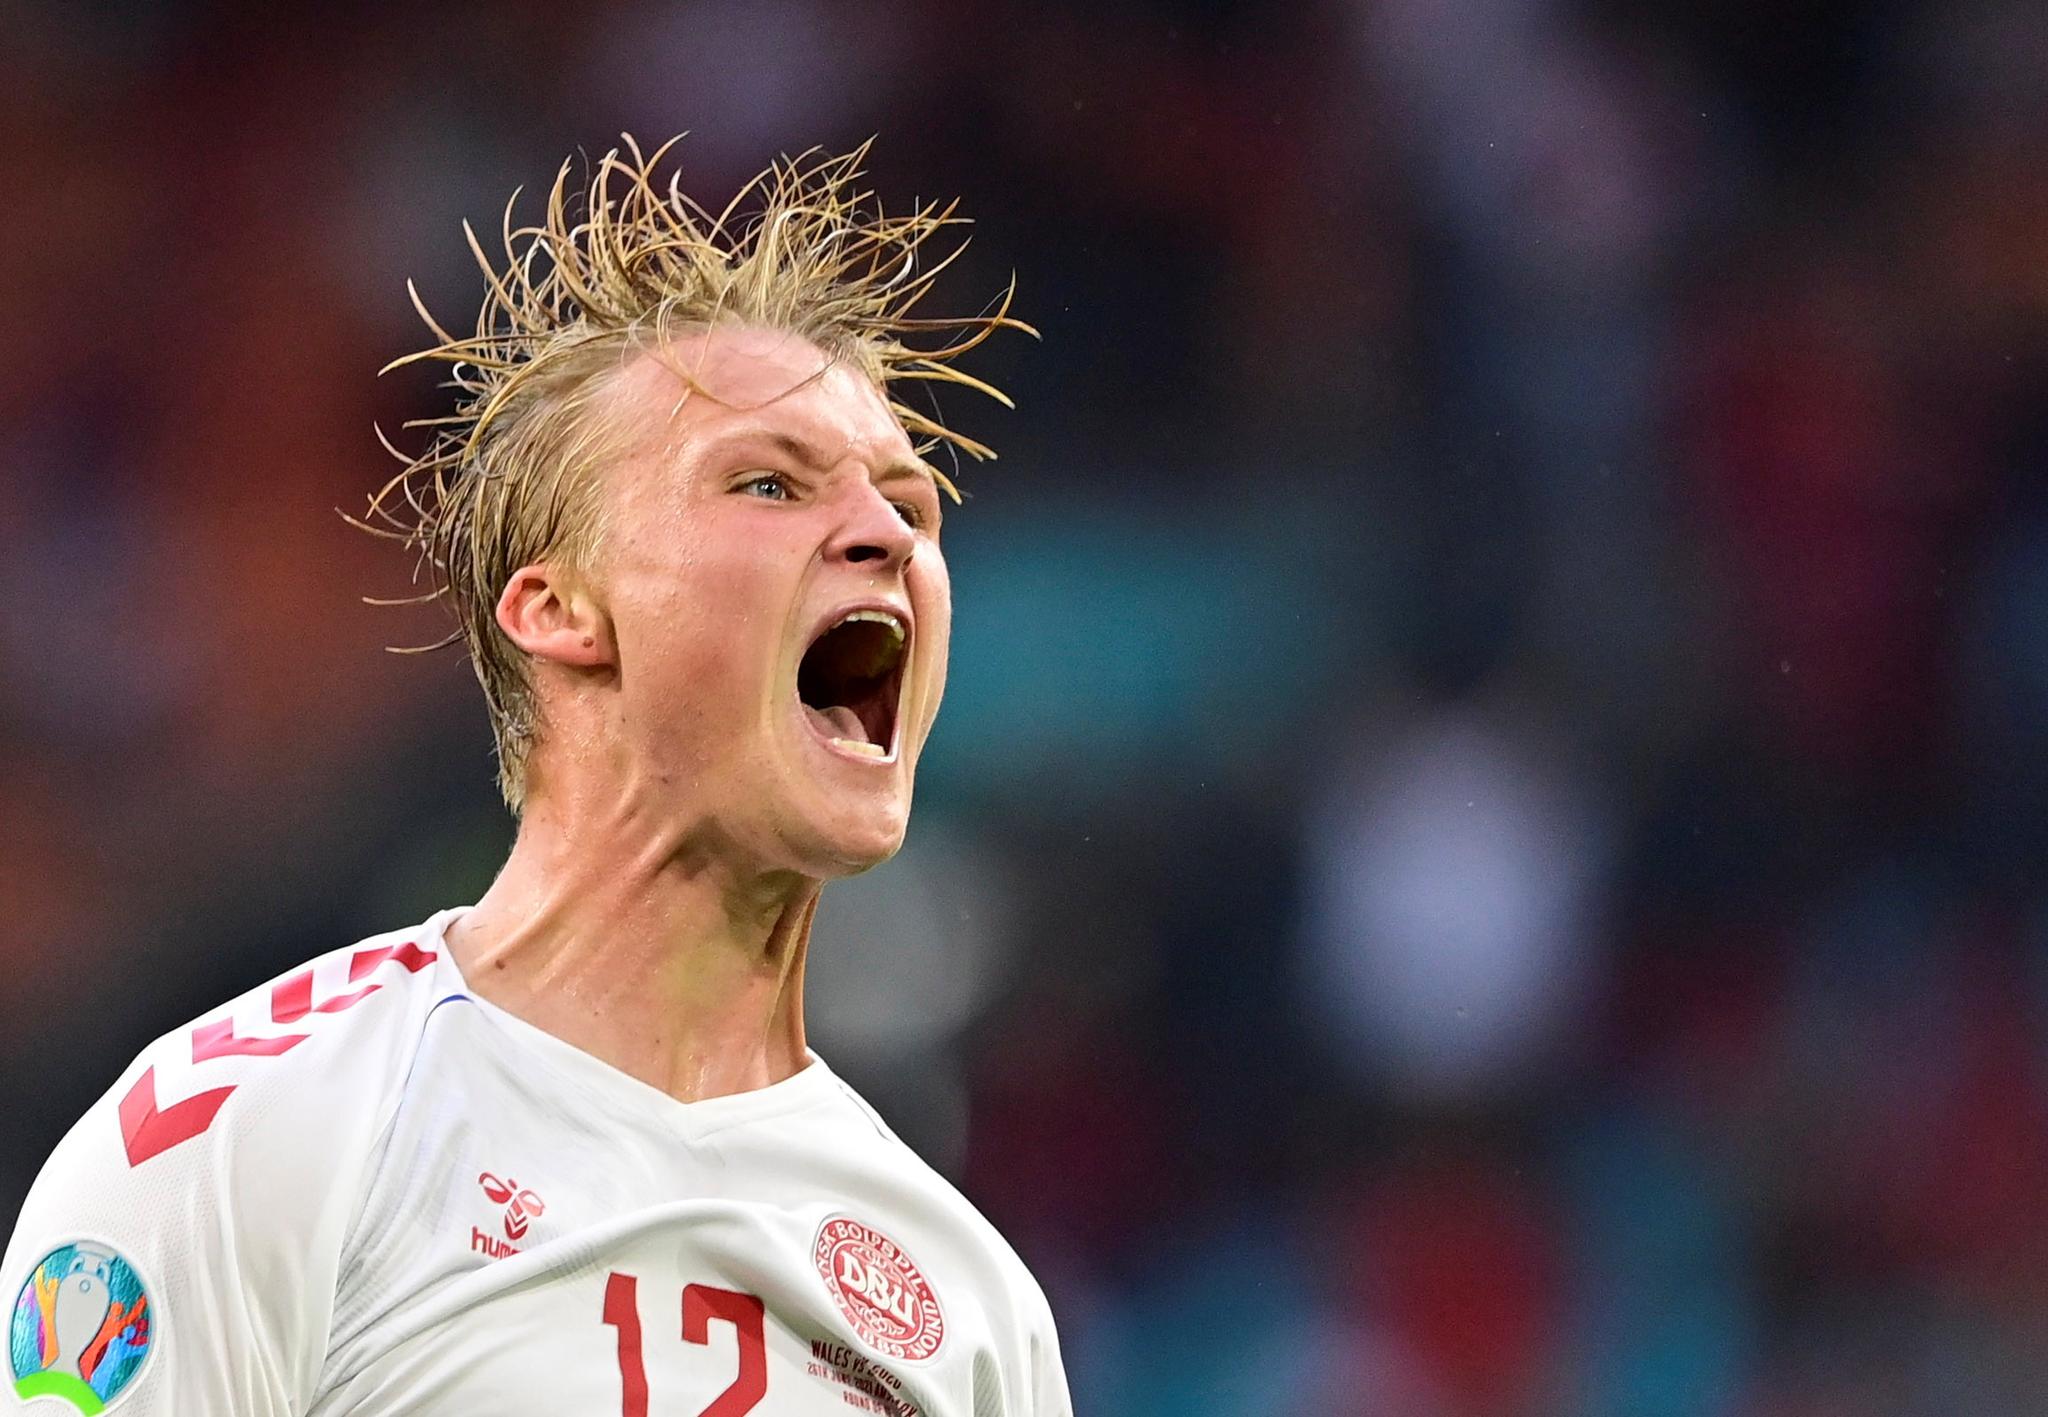 Danmarks Kasper Dolberg feirer scoring i kampen mot Wales.